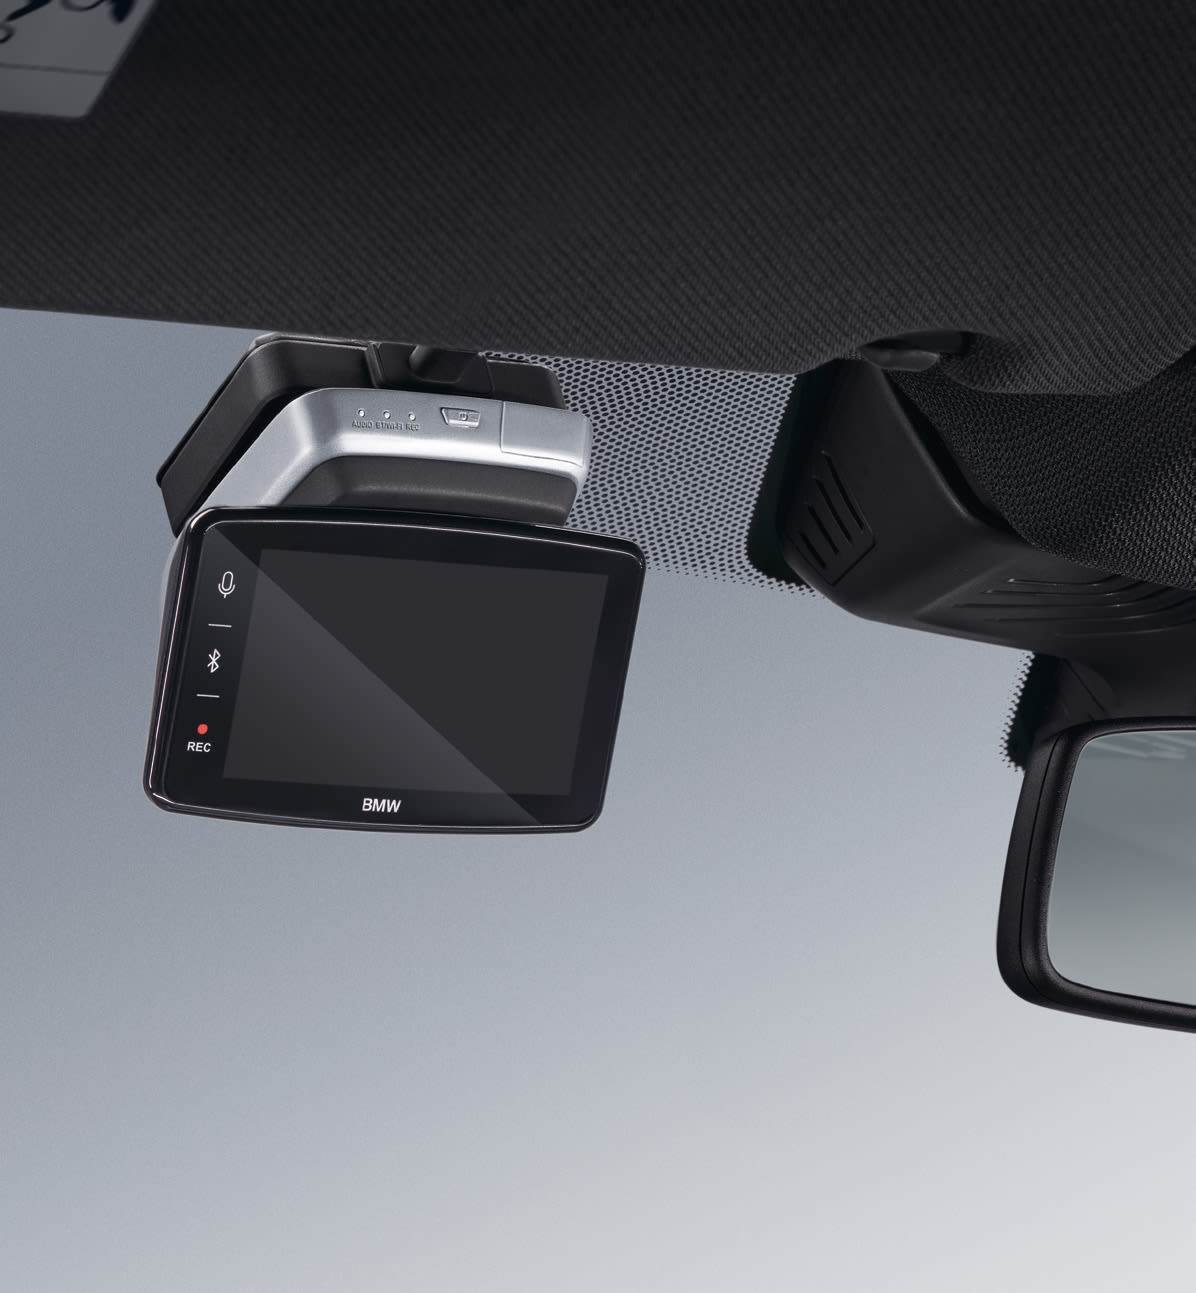 Advanced Car Eye 3.0 PRO. Safety in Full HD